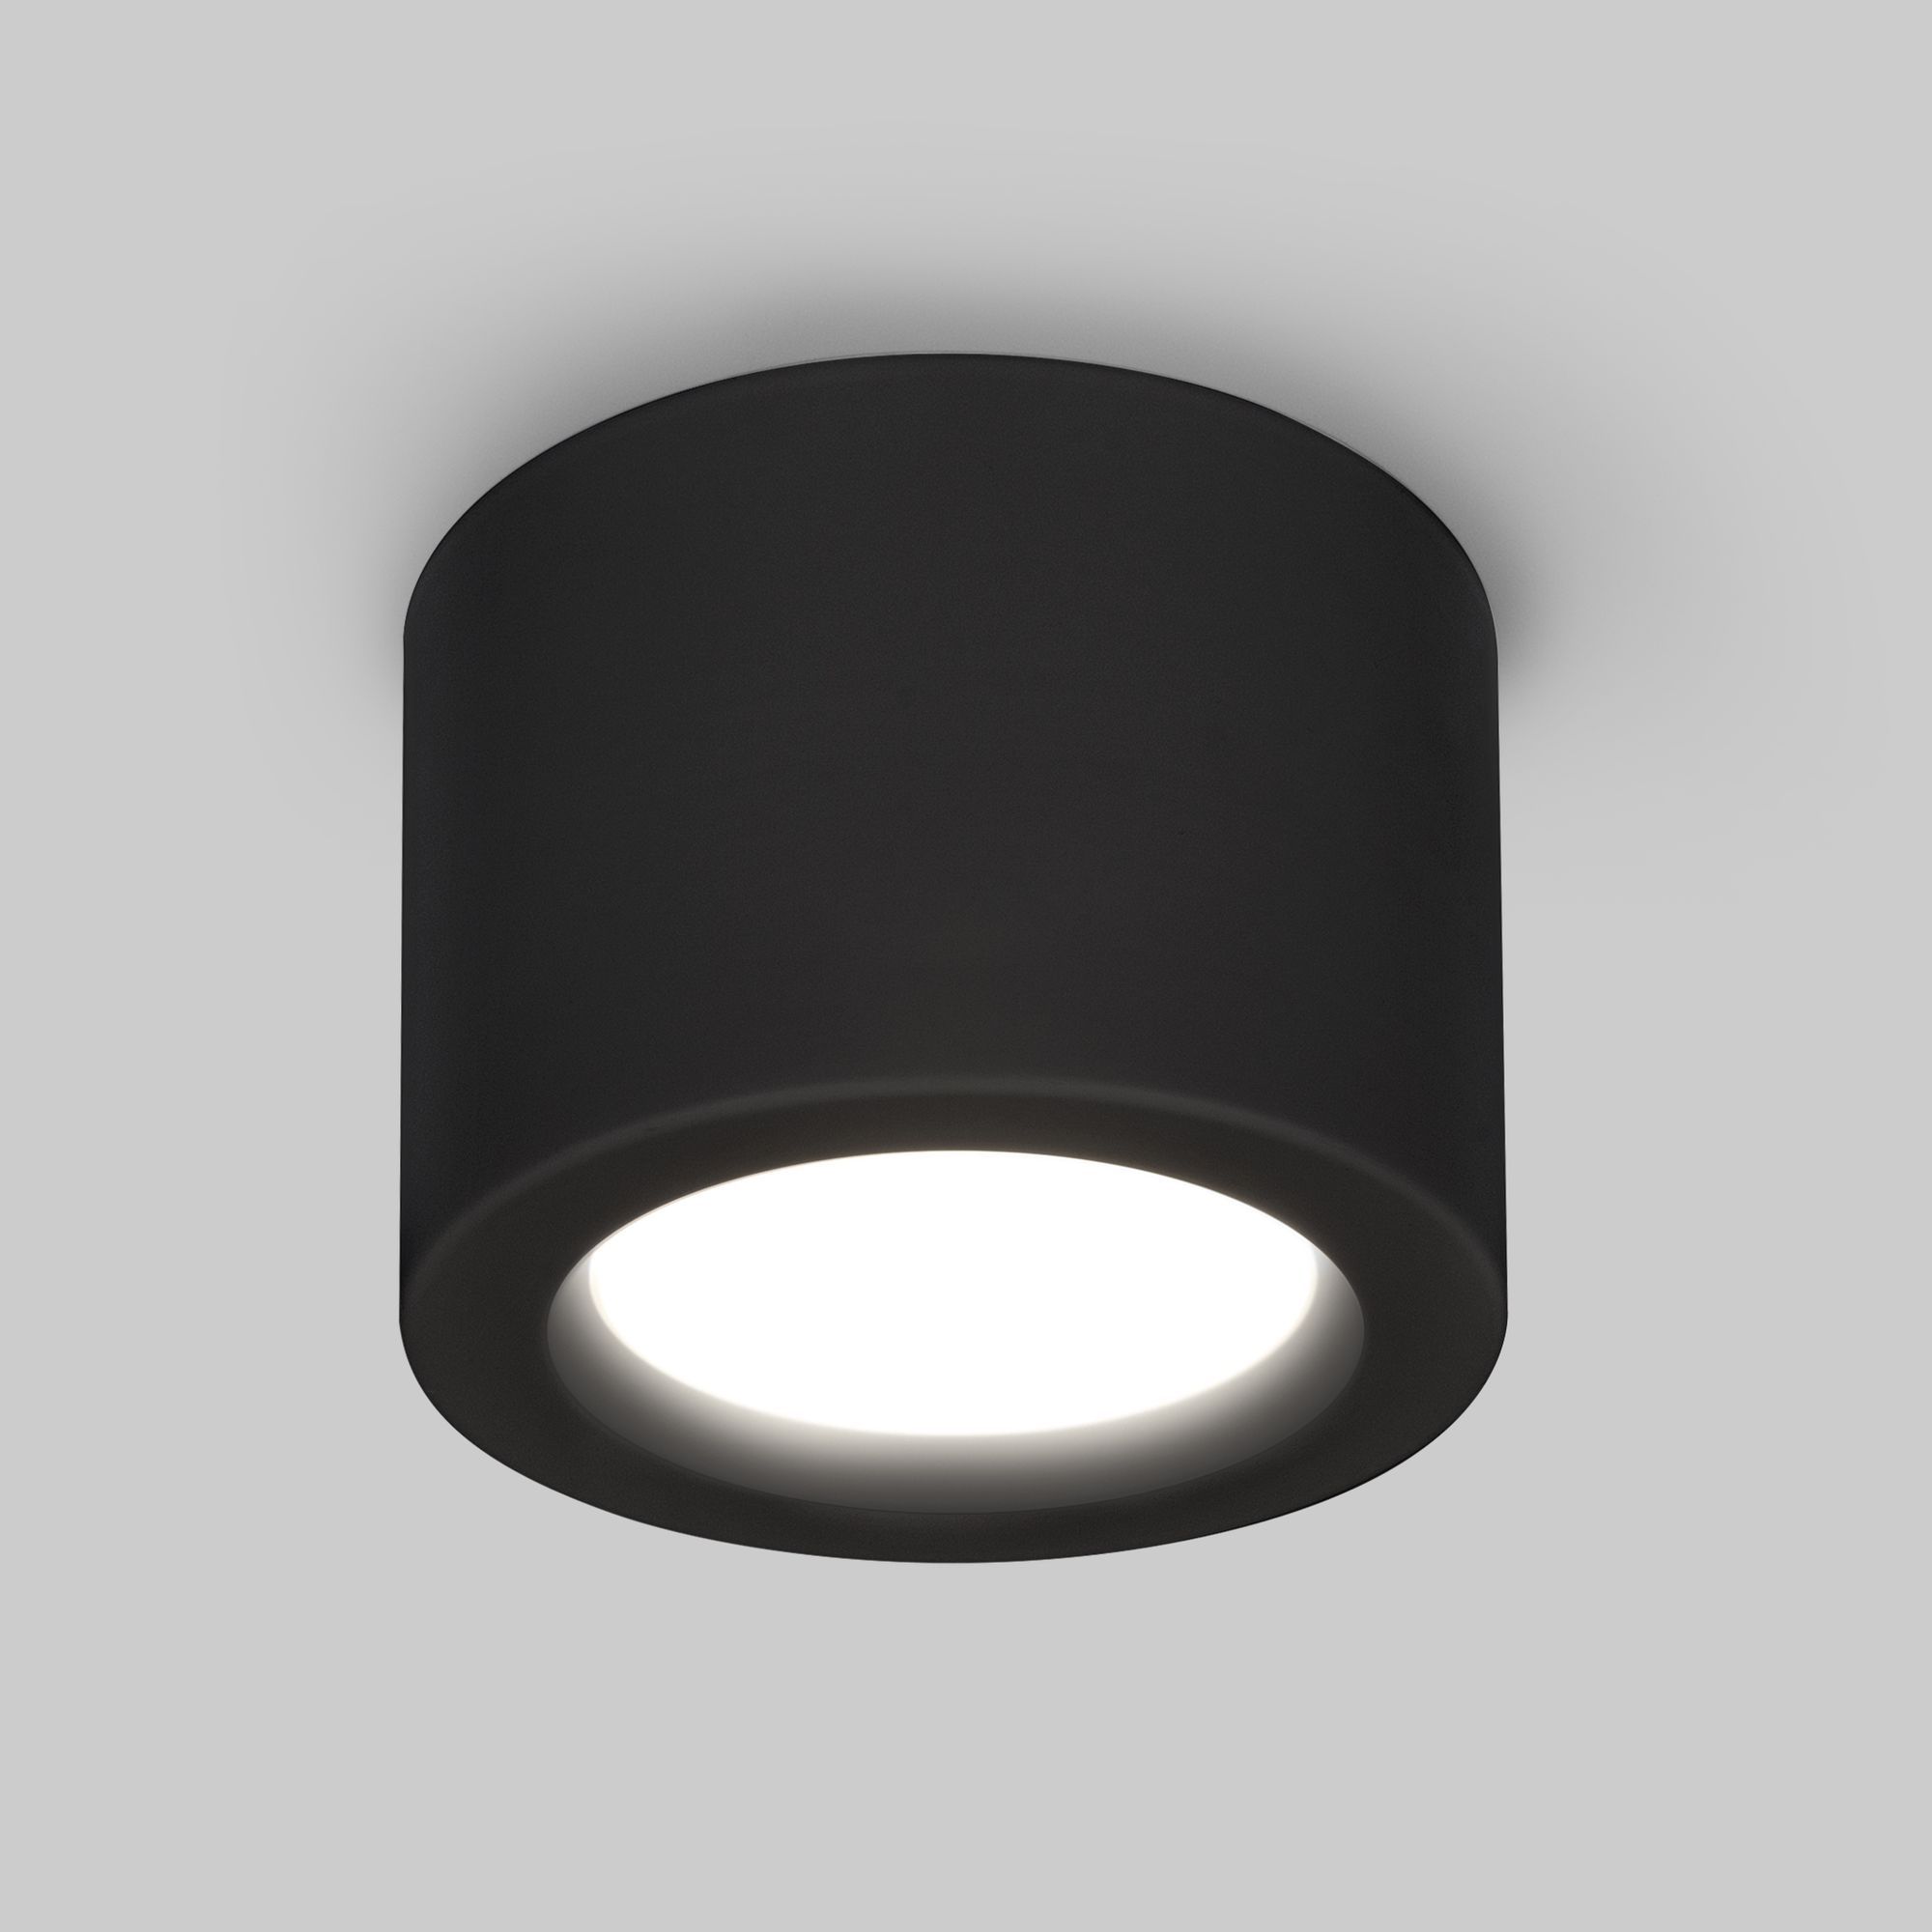 Накладной потолочный  светодиодный светильник DLR026 6W 4200K черный матовый. Фото 1